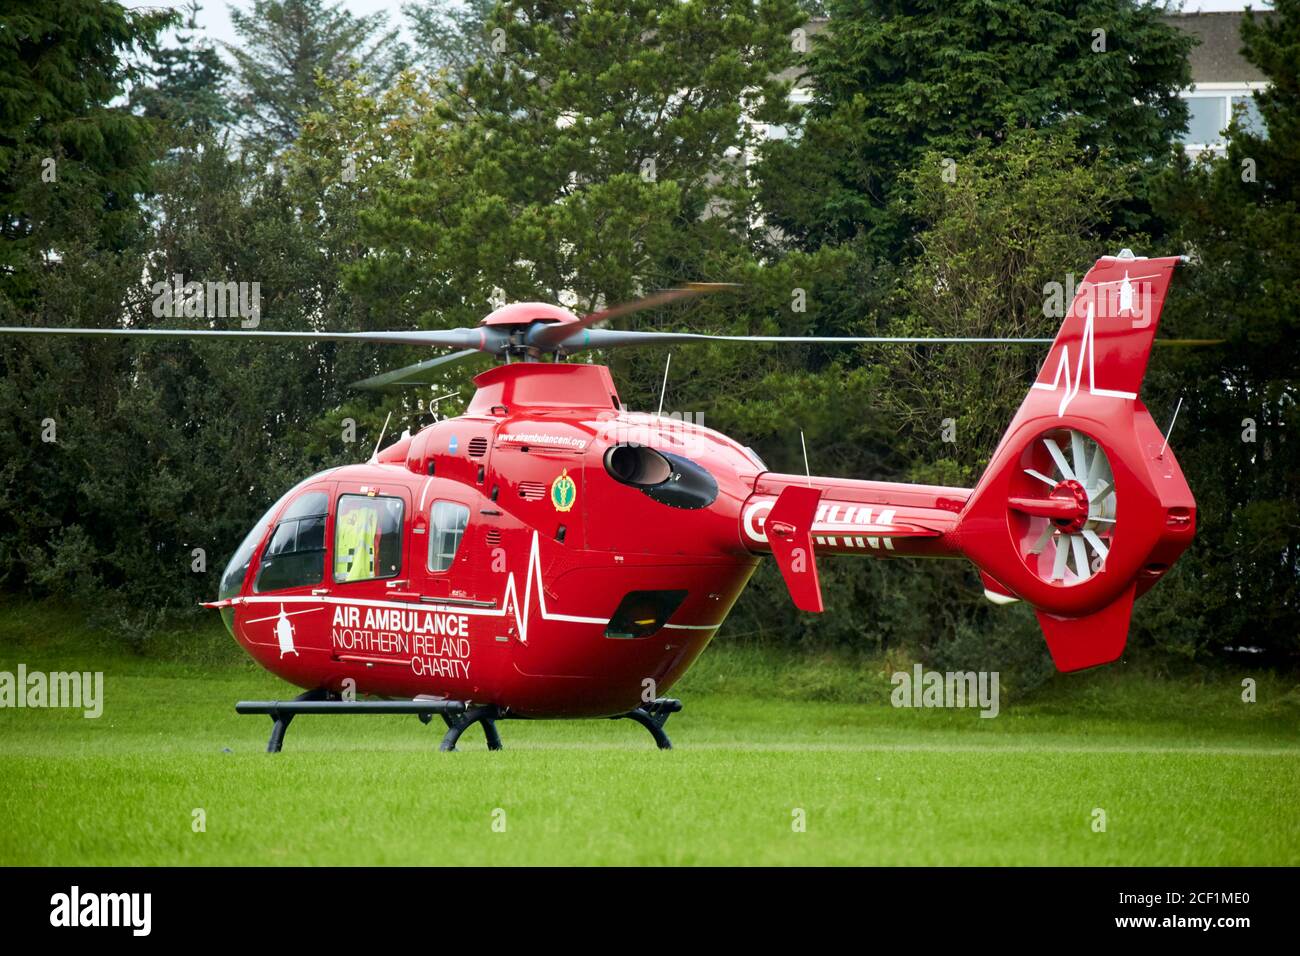 L'ambulance aérienne d'Irlande du Nord sur appel a atterri avec des rotors Lancement d'un terrain de football scolaire à Newtowbabbabbabbabbabbabbabbab Ambulance aérienne britannique NOR Banque D'Images